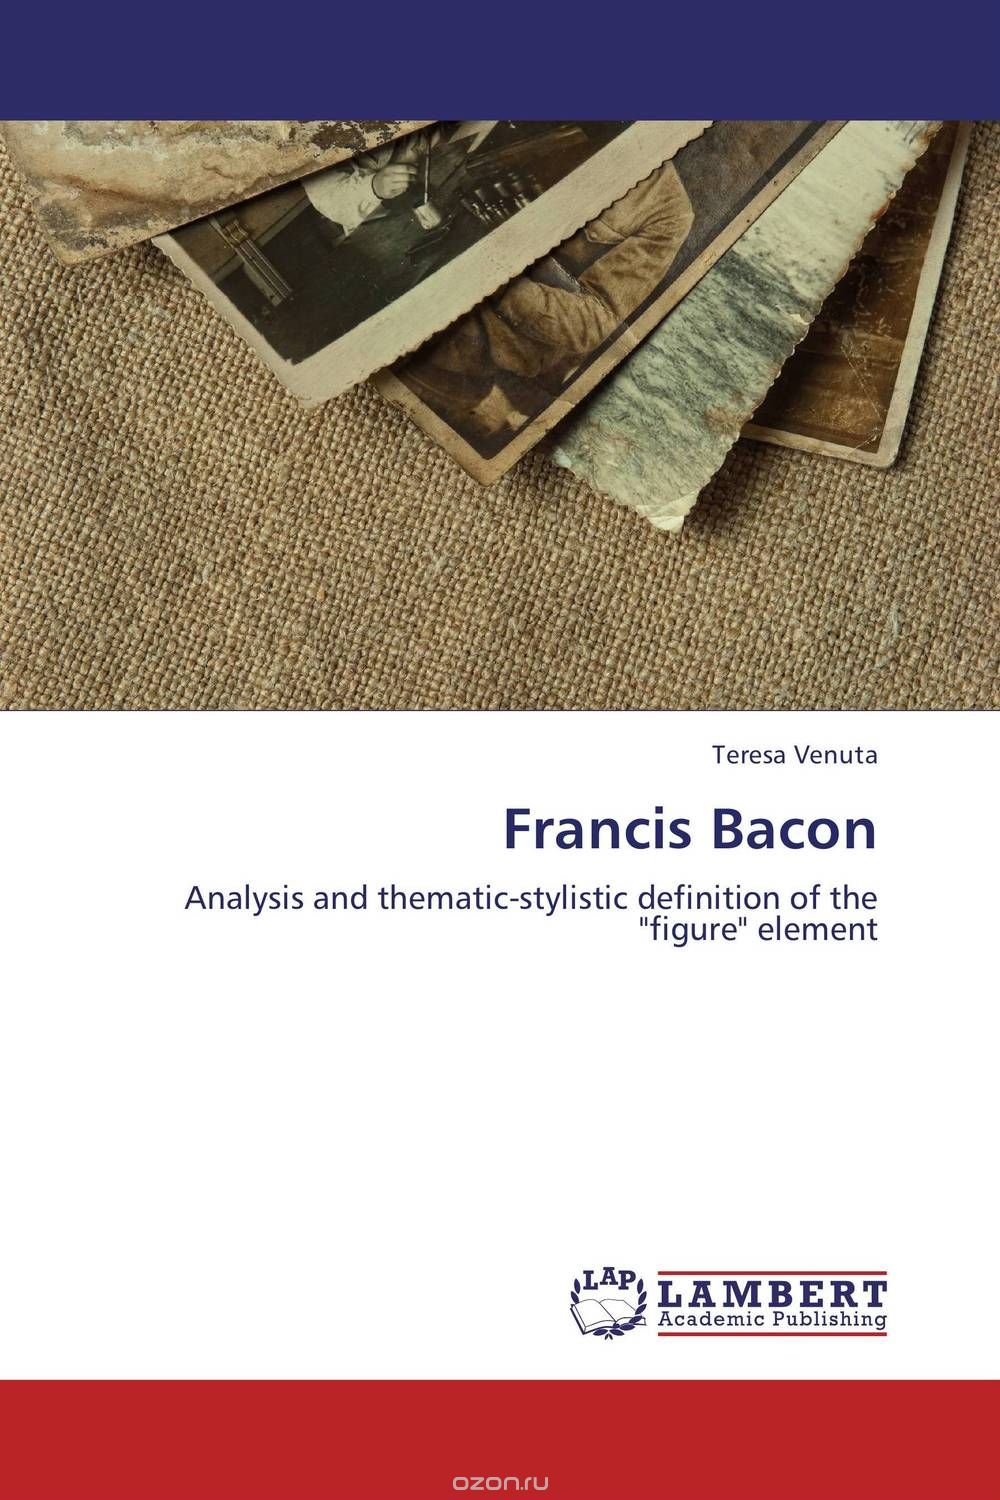 Скачать книгу "Francis Bacon"